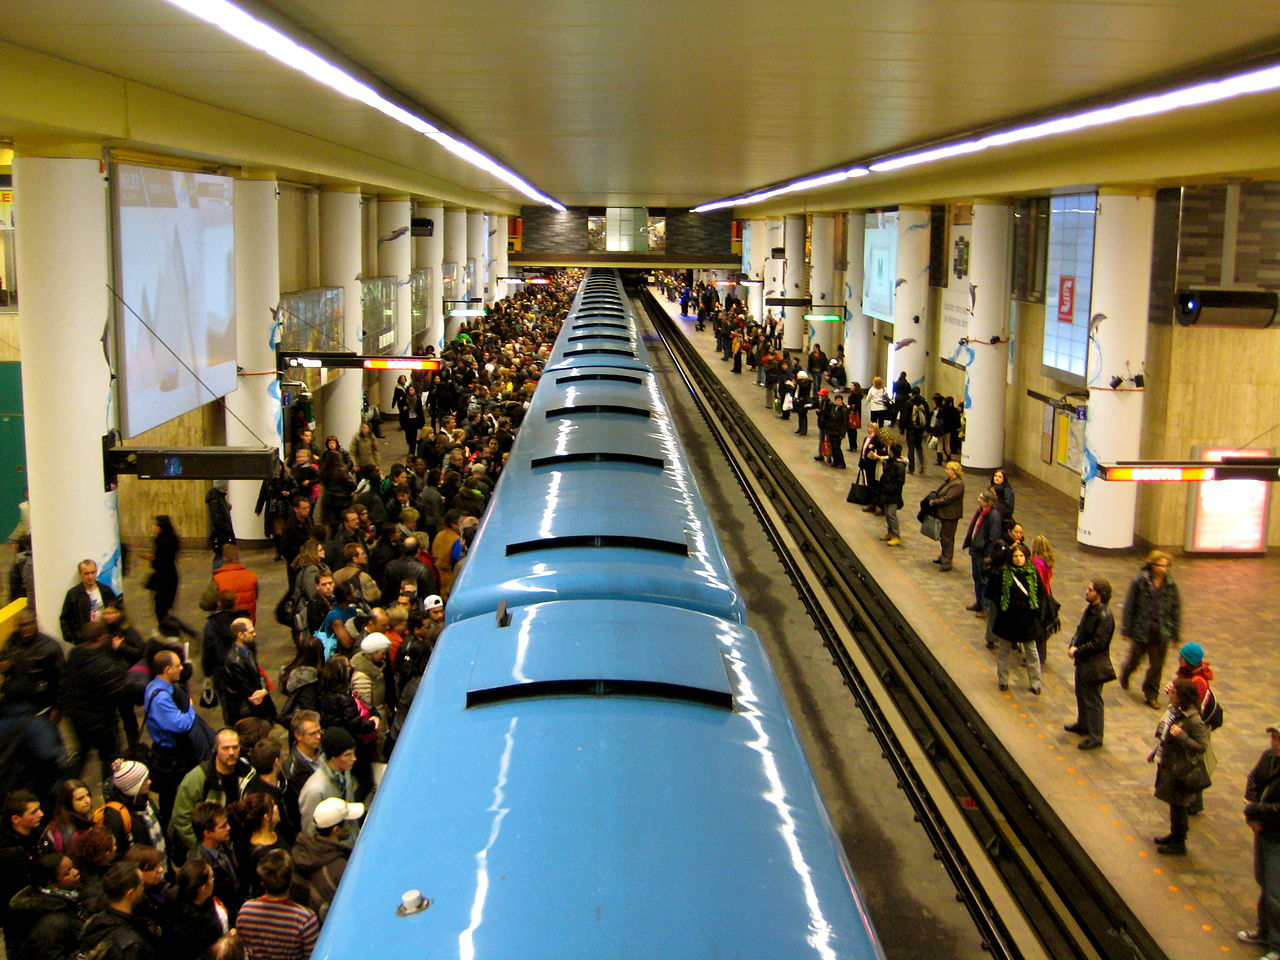 Le métro de Montréal Photo: Wikimedia